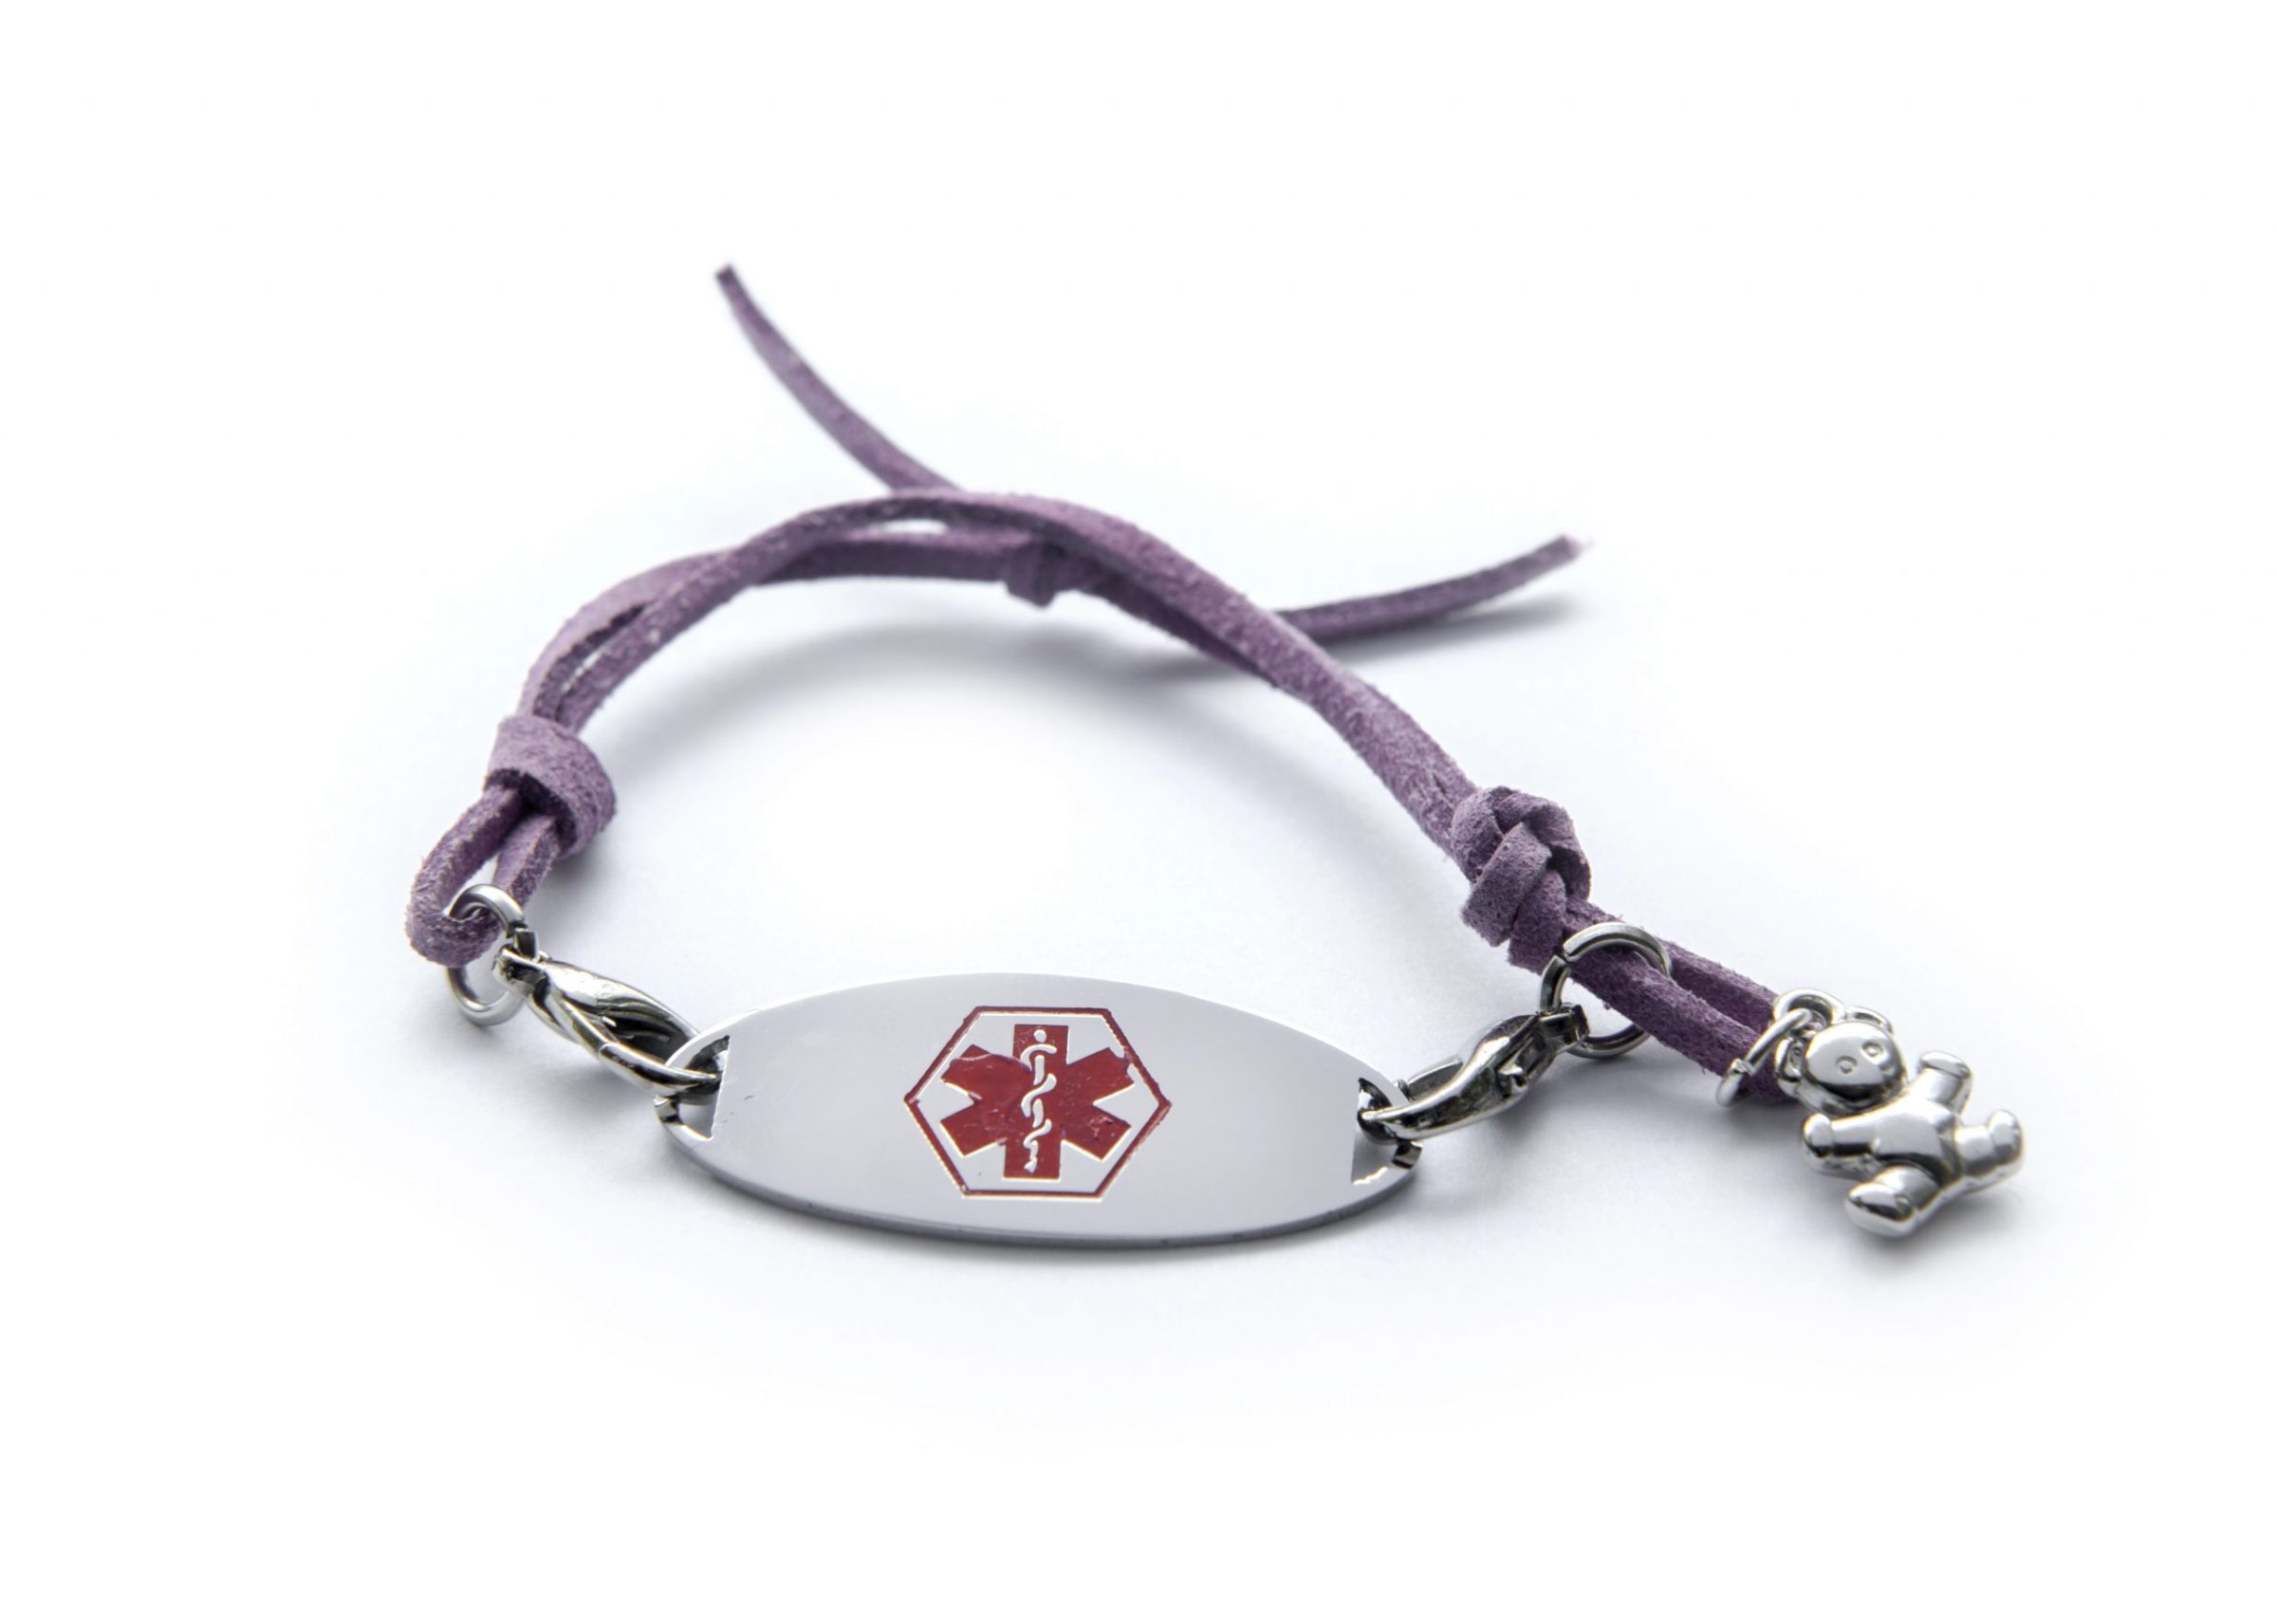 Details more than 87 designer medical id bracelets - ceg.edu.vn